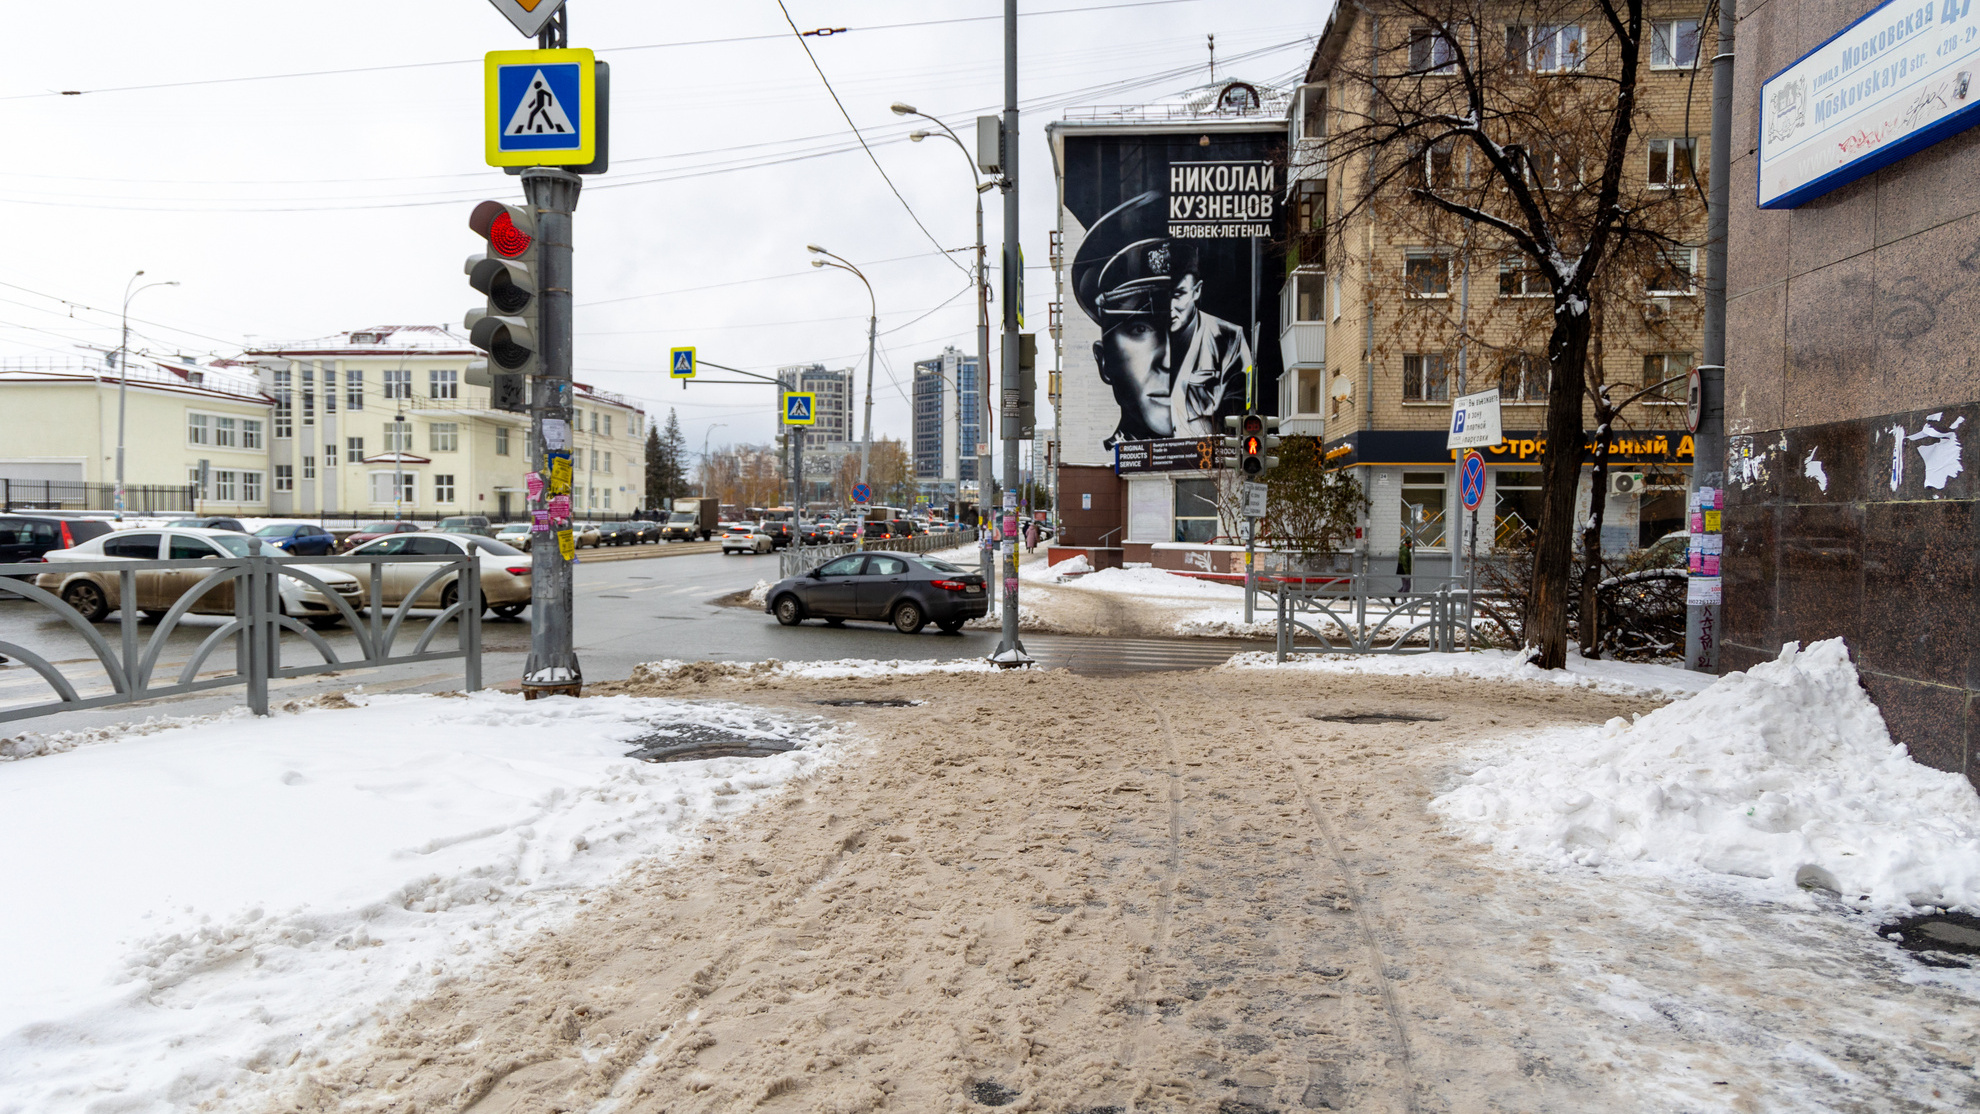 «Лицо города выглядит грязным и некрасивым»: екатеринбуржца взбесили не чищенные от снега тротуары